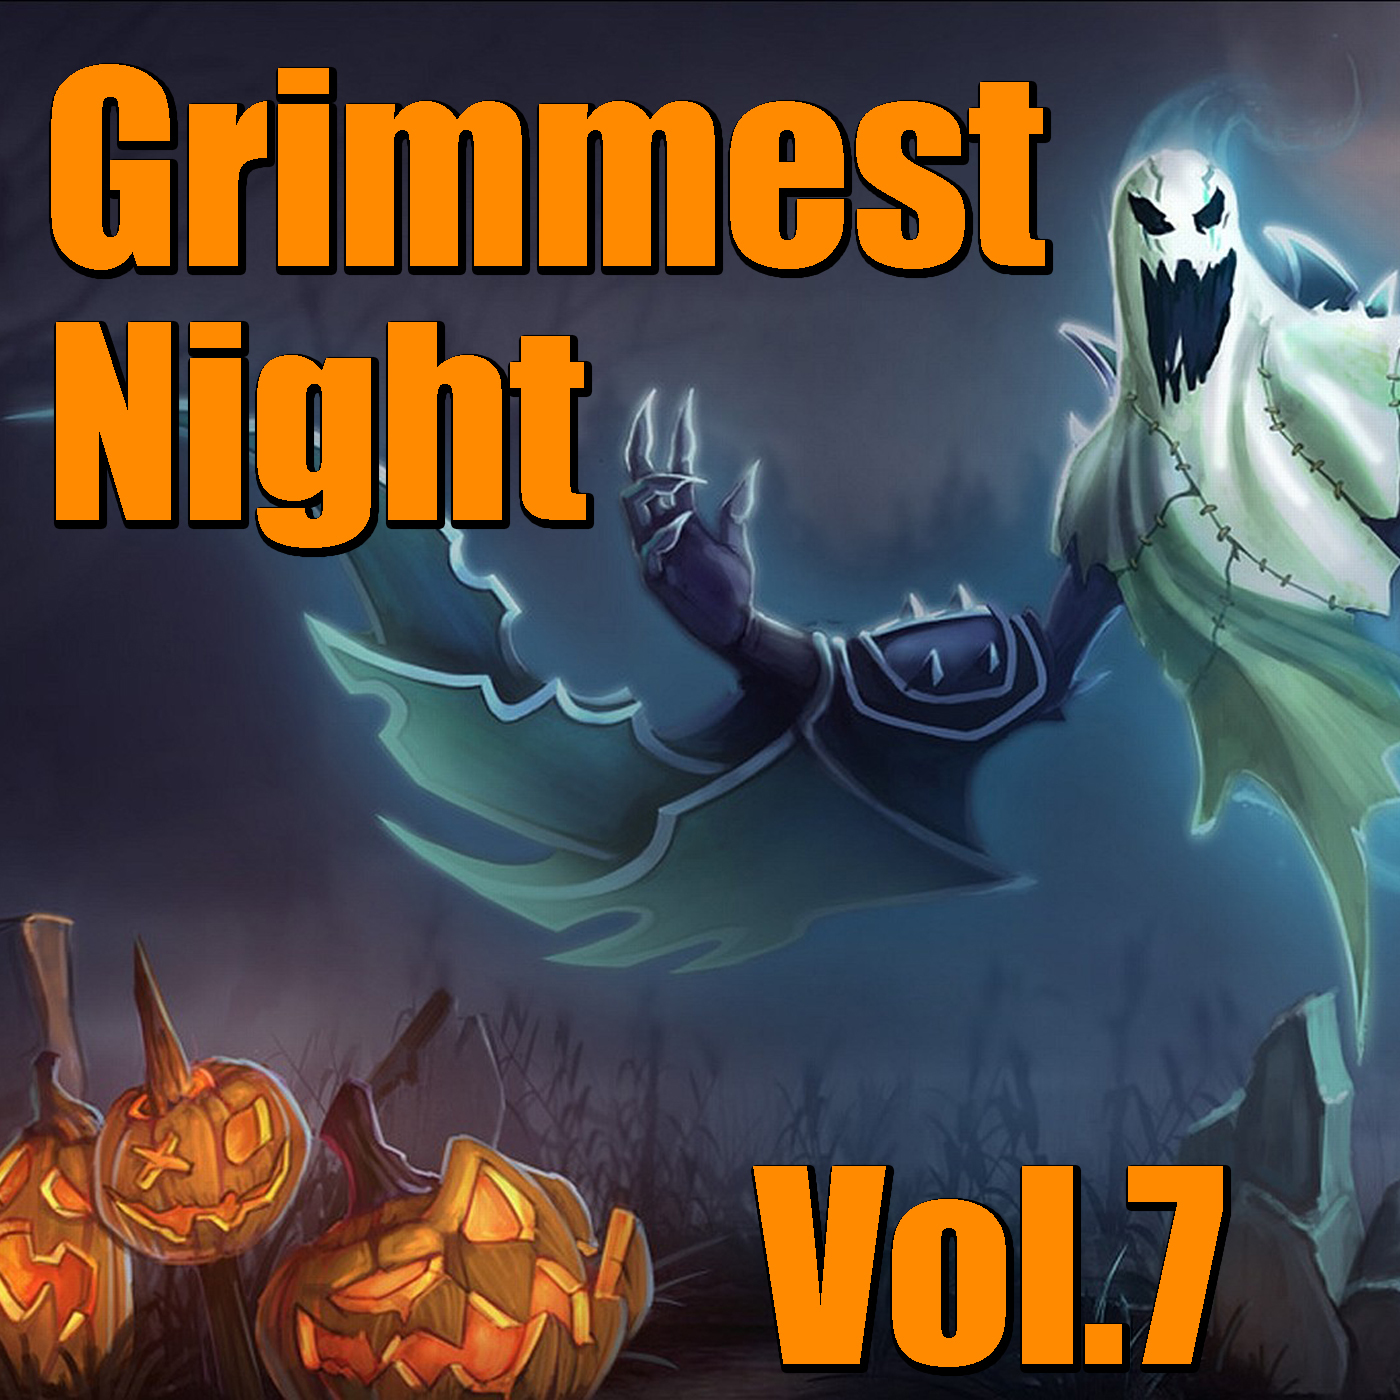 Grimmest Night, Vol. 7